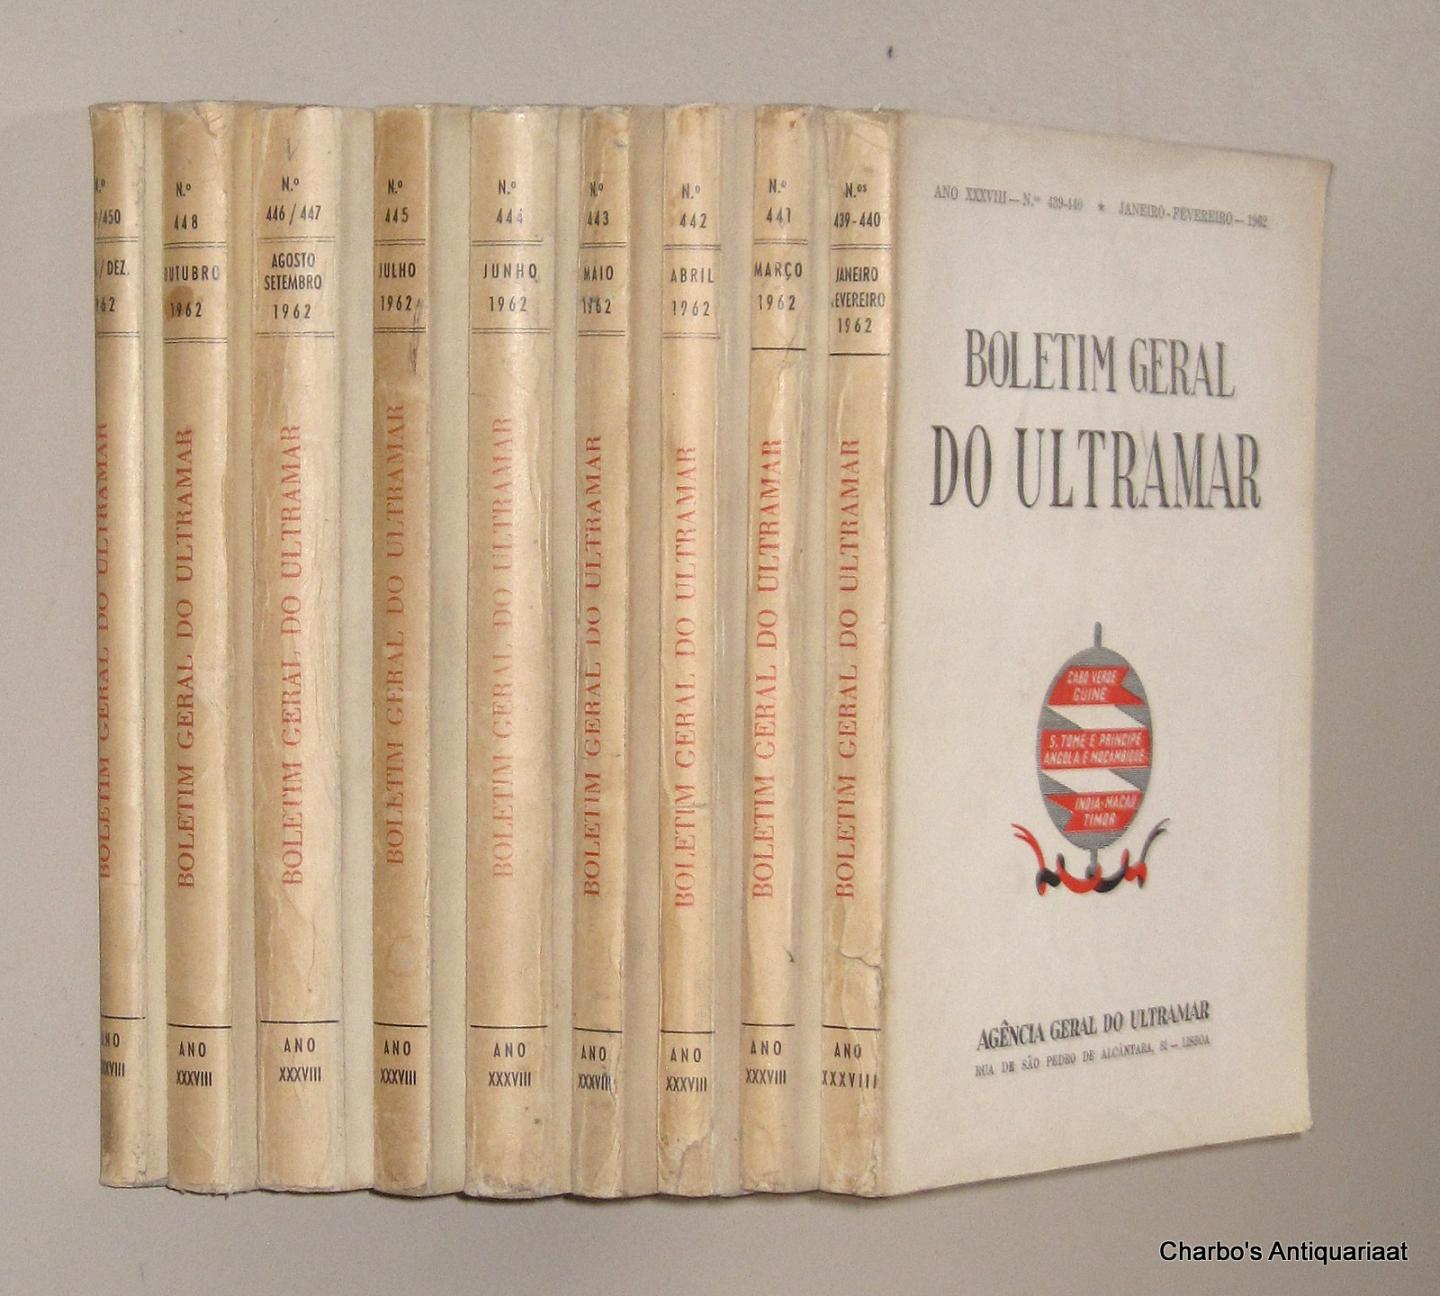 AGENCIA GERAL DO ULTRAMAR, - Boletim Geral do Ultramar, ano XXXVIII No. 439, Janeiro - No. 450, Dezembro 1962.